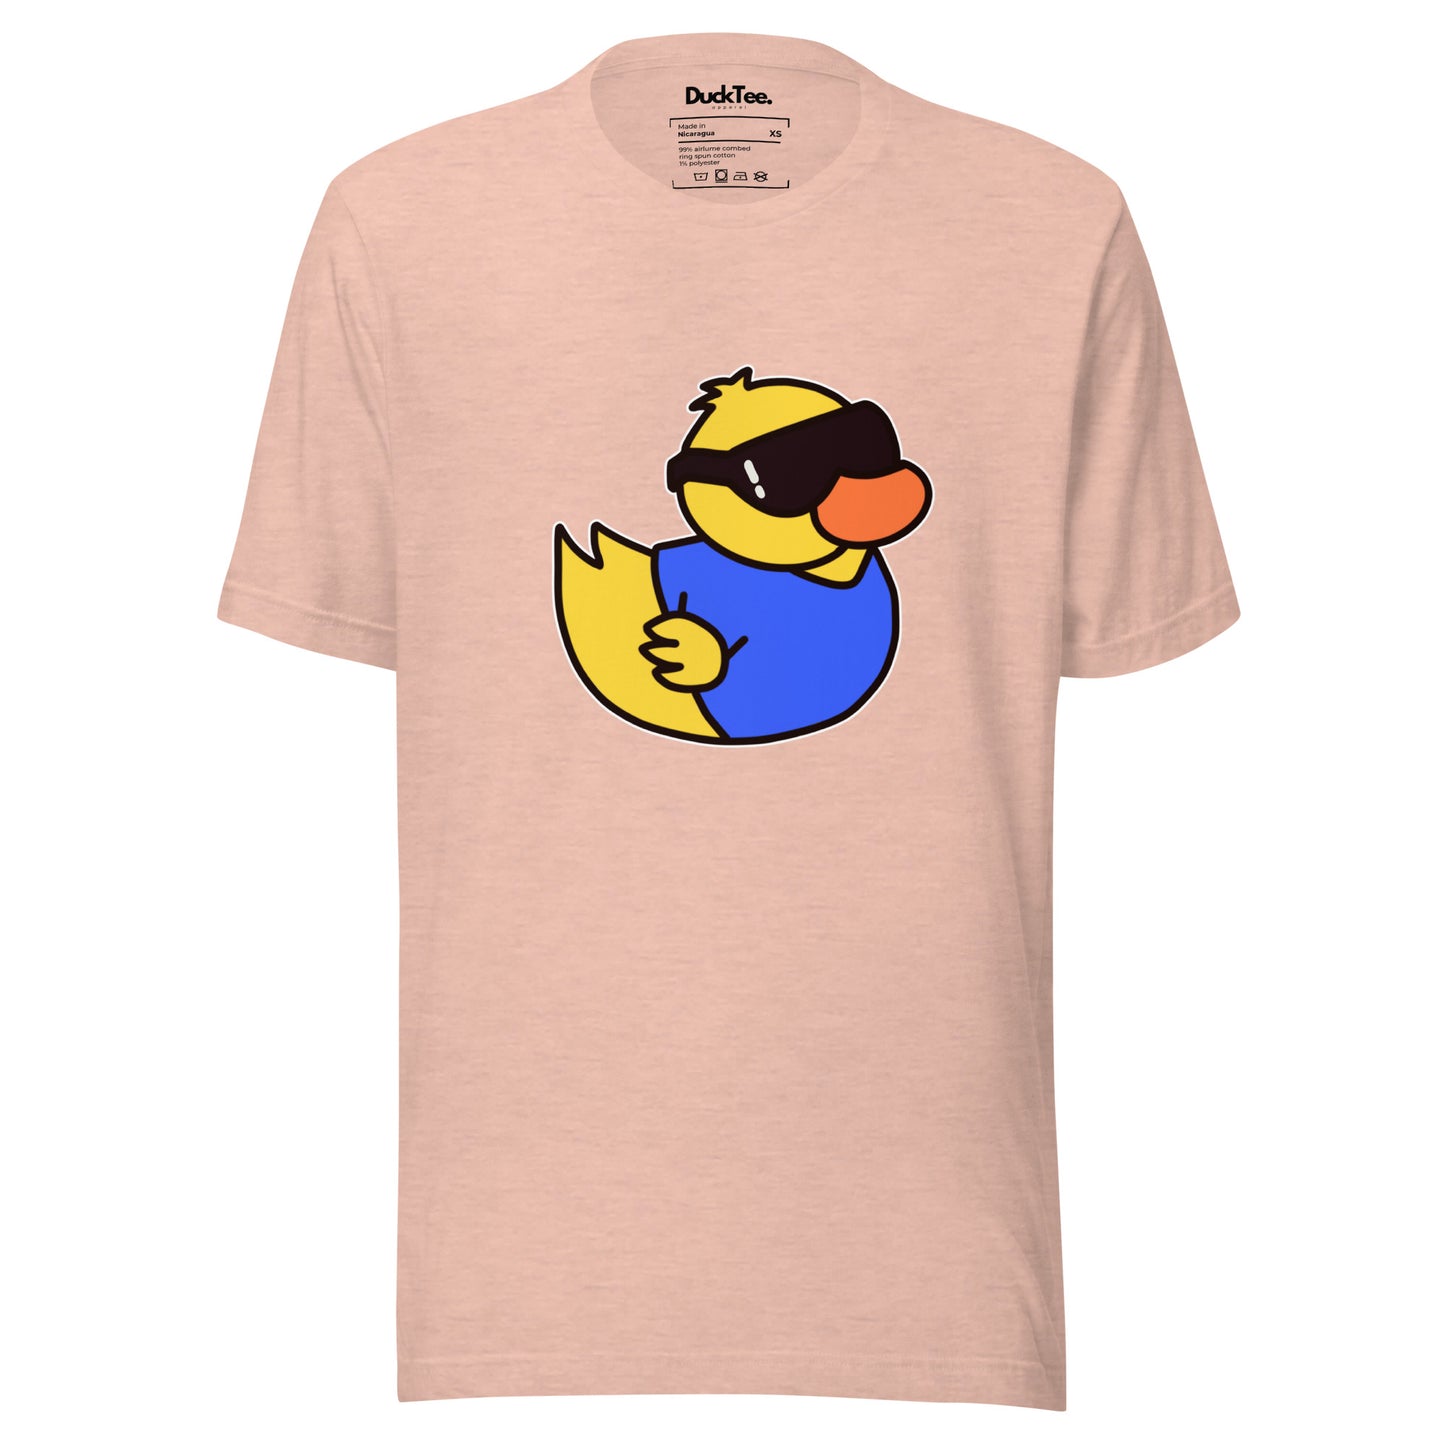 Classic DuckTee Unisex t-shirt